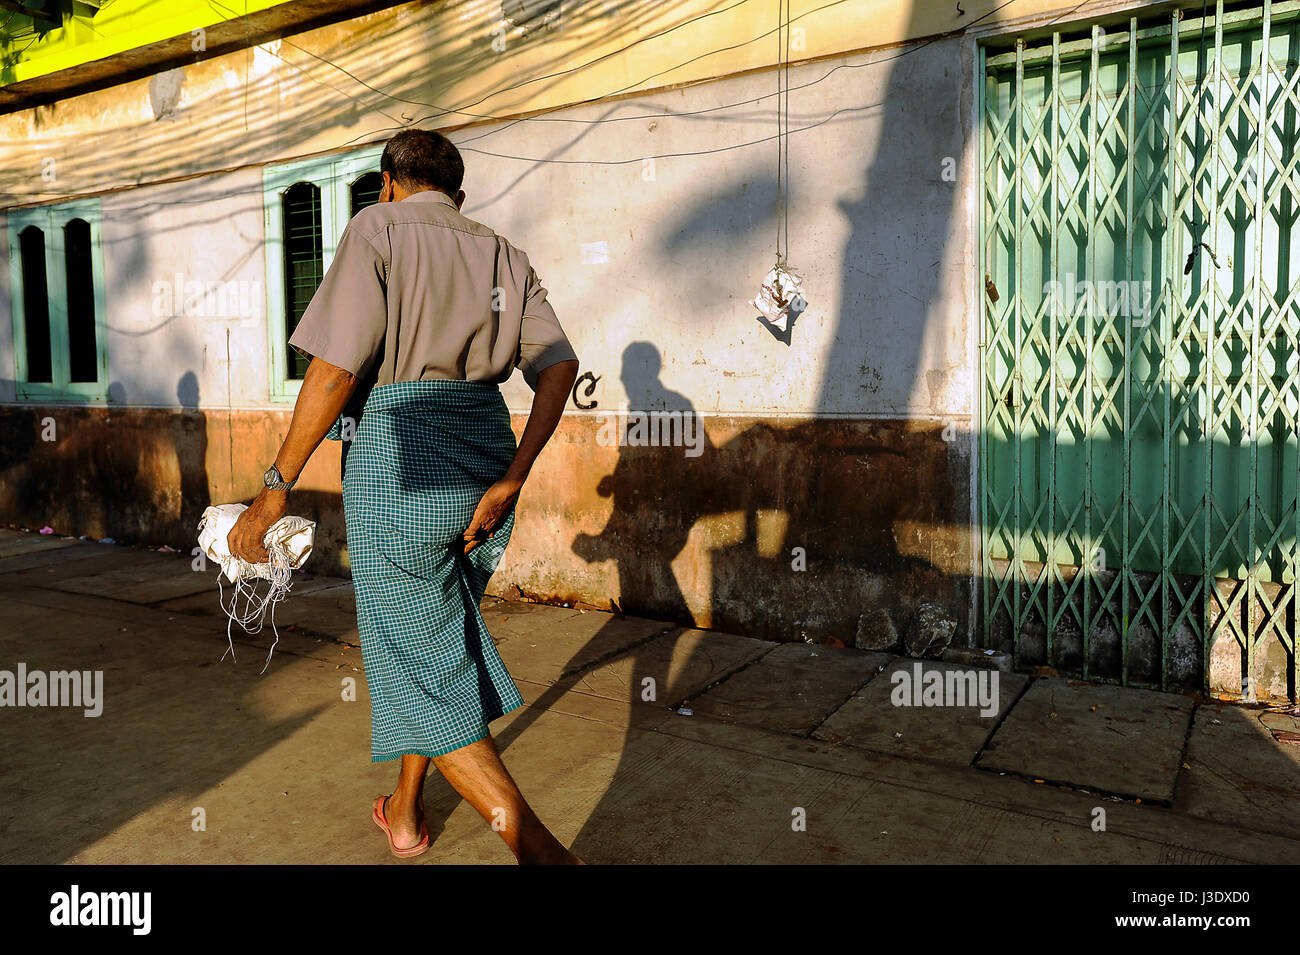 Yangon, Myanmar, Asia, A street scene in Yangon Stock Photo